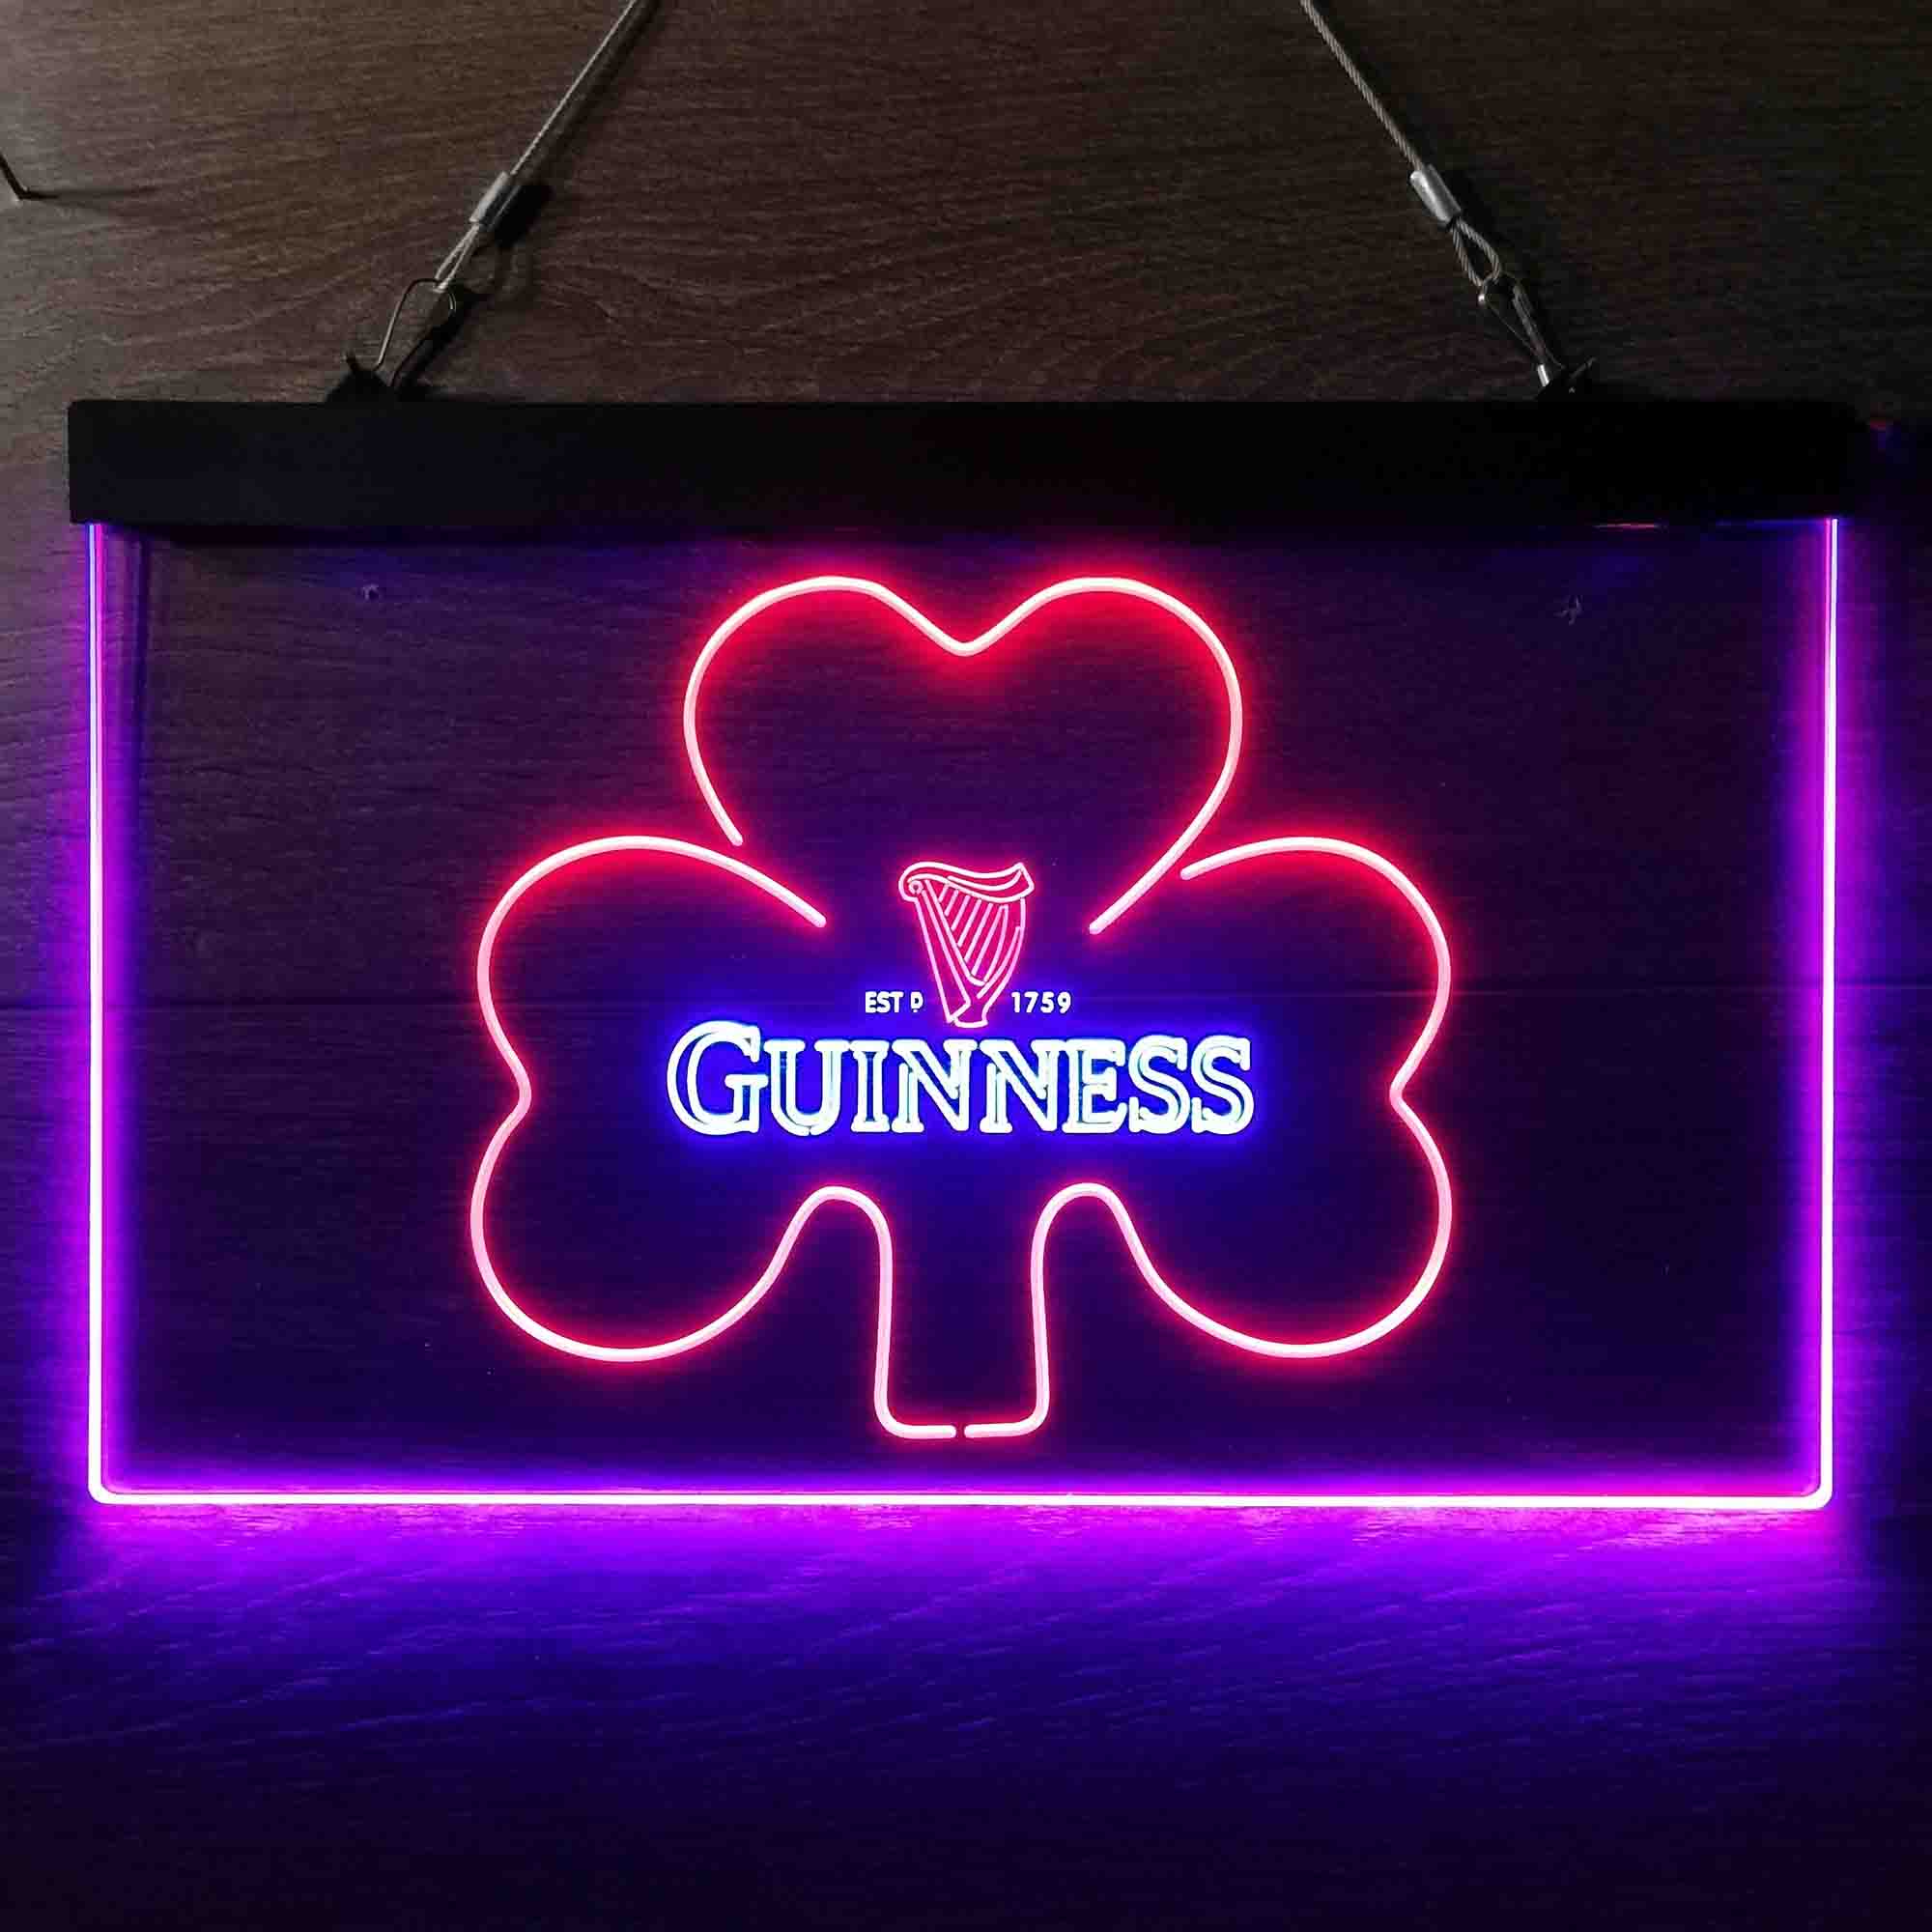 Guinness Shamrock Ale Neon-Like LED Sign